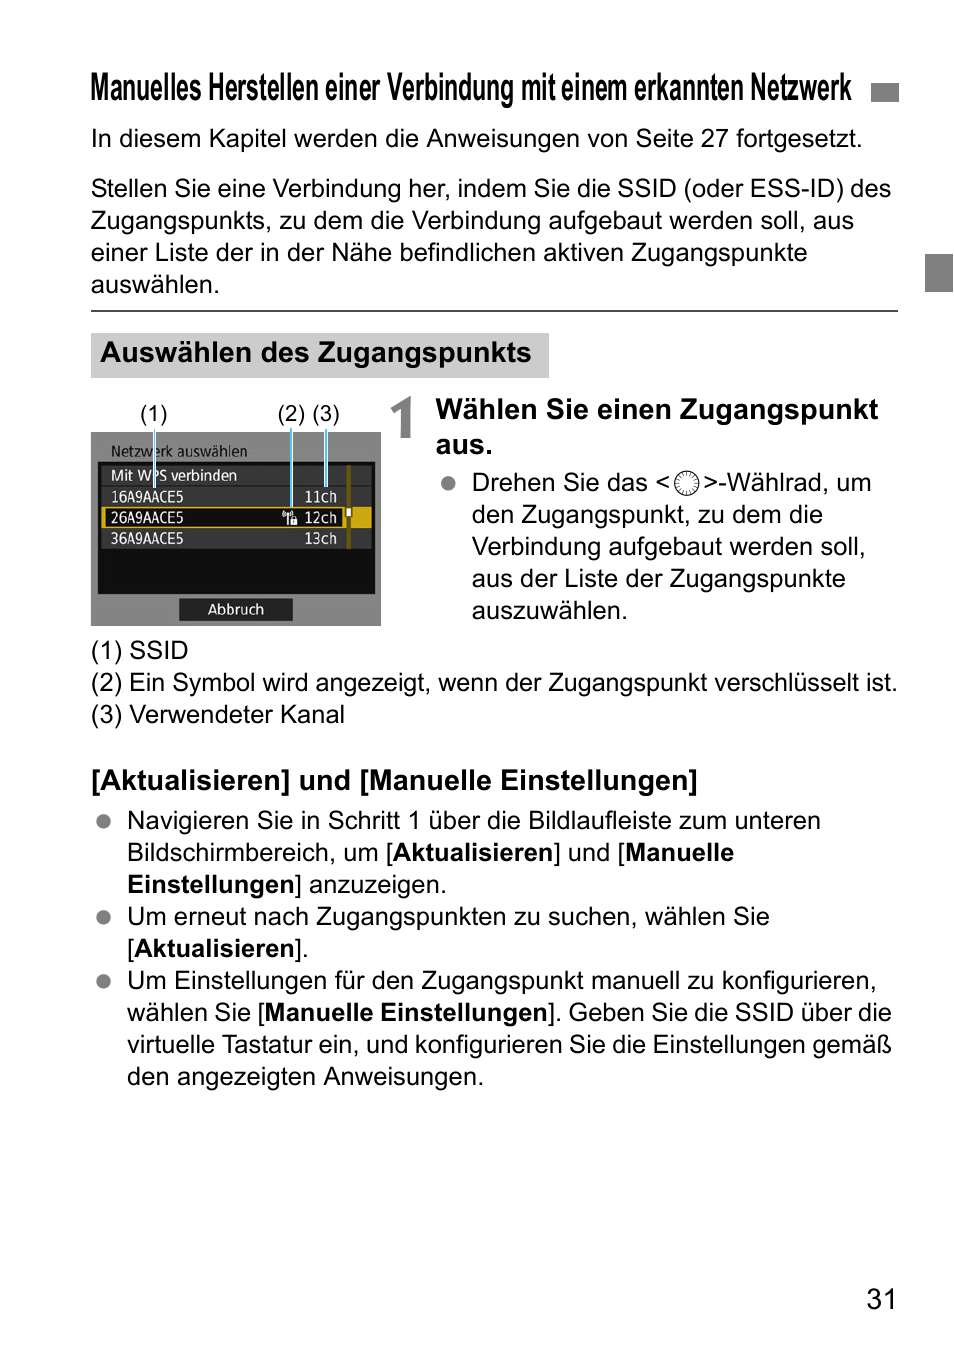 Eite 31 beschr | Canon EOS 1D X Mark II Benutzerhandbuch | Seite 31 / 152